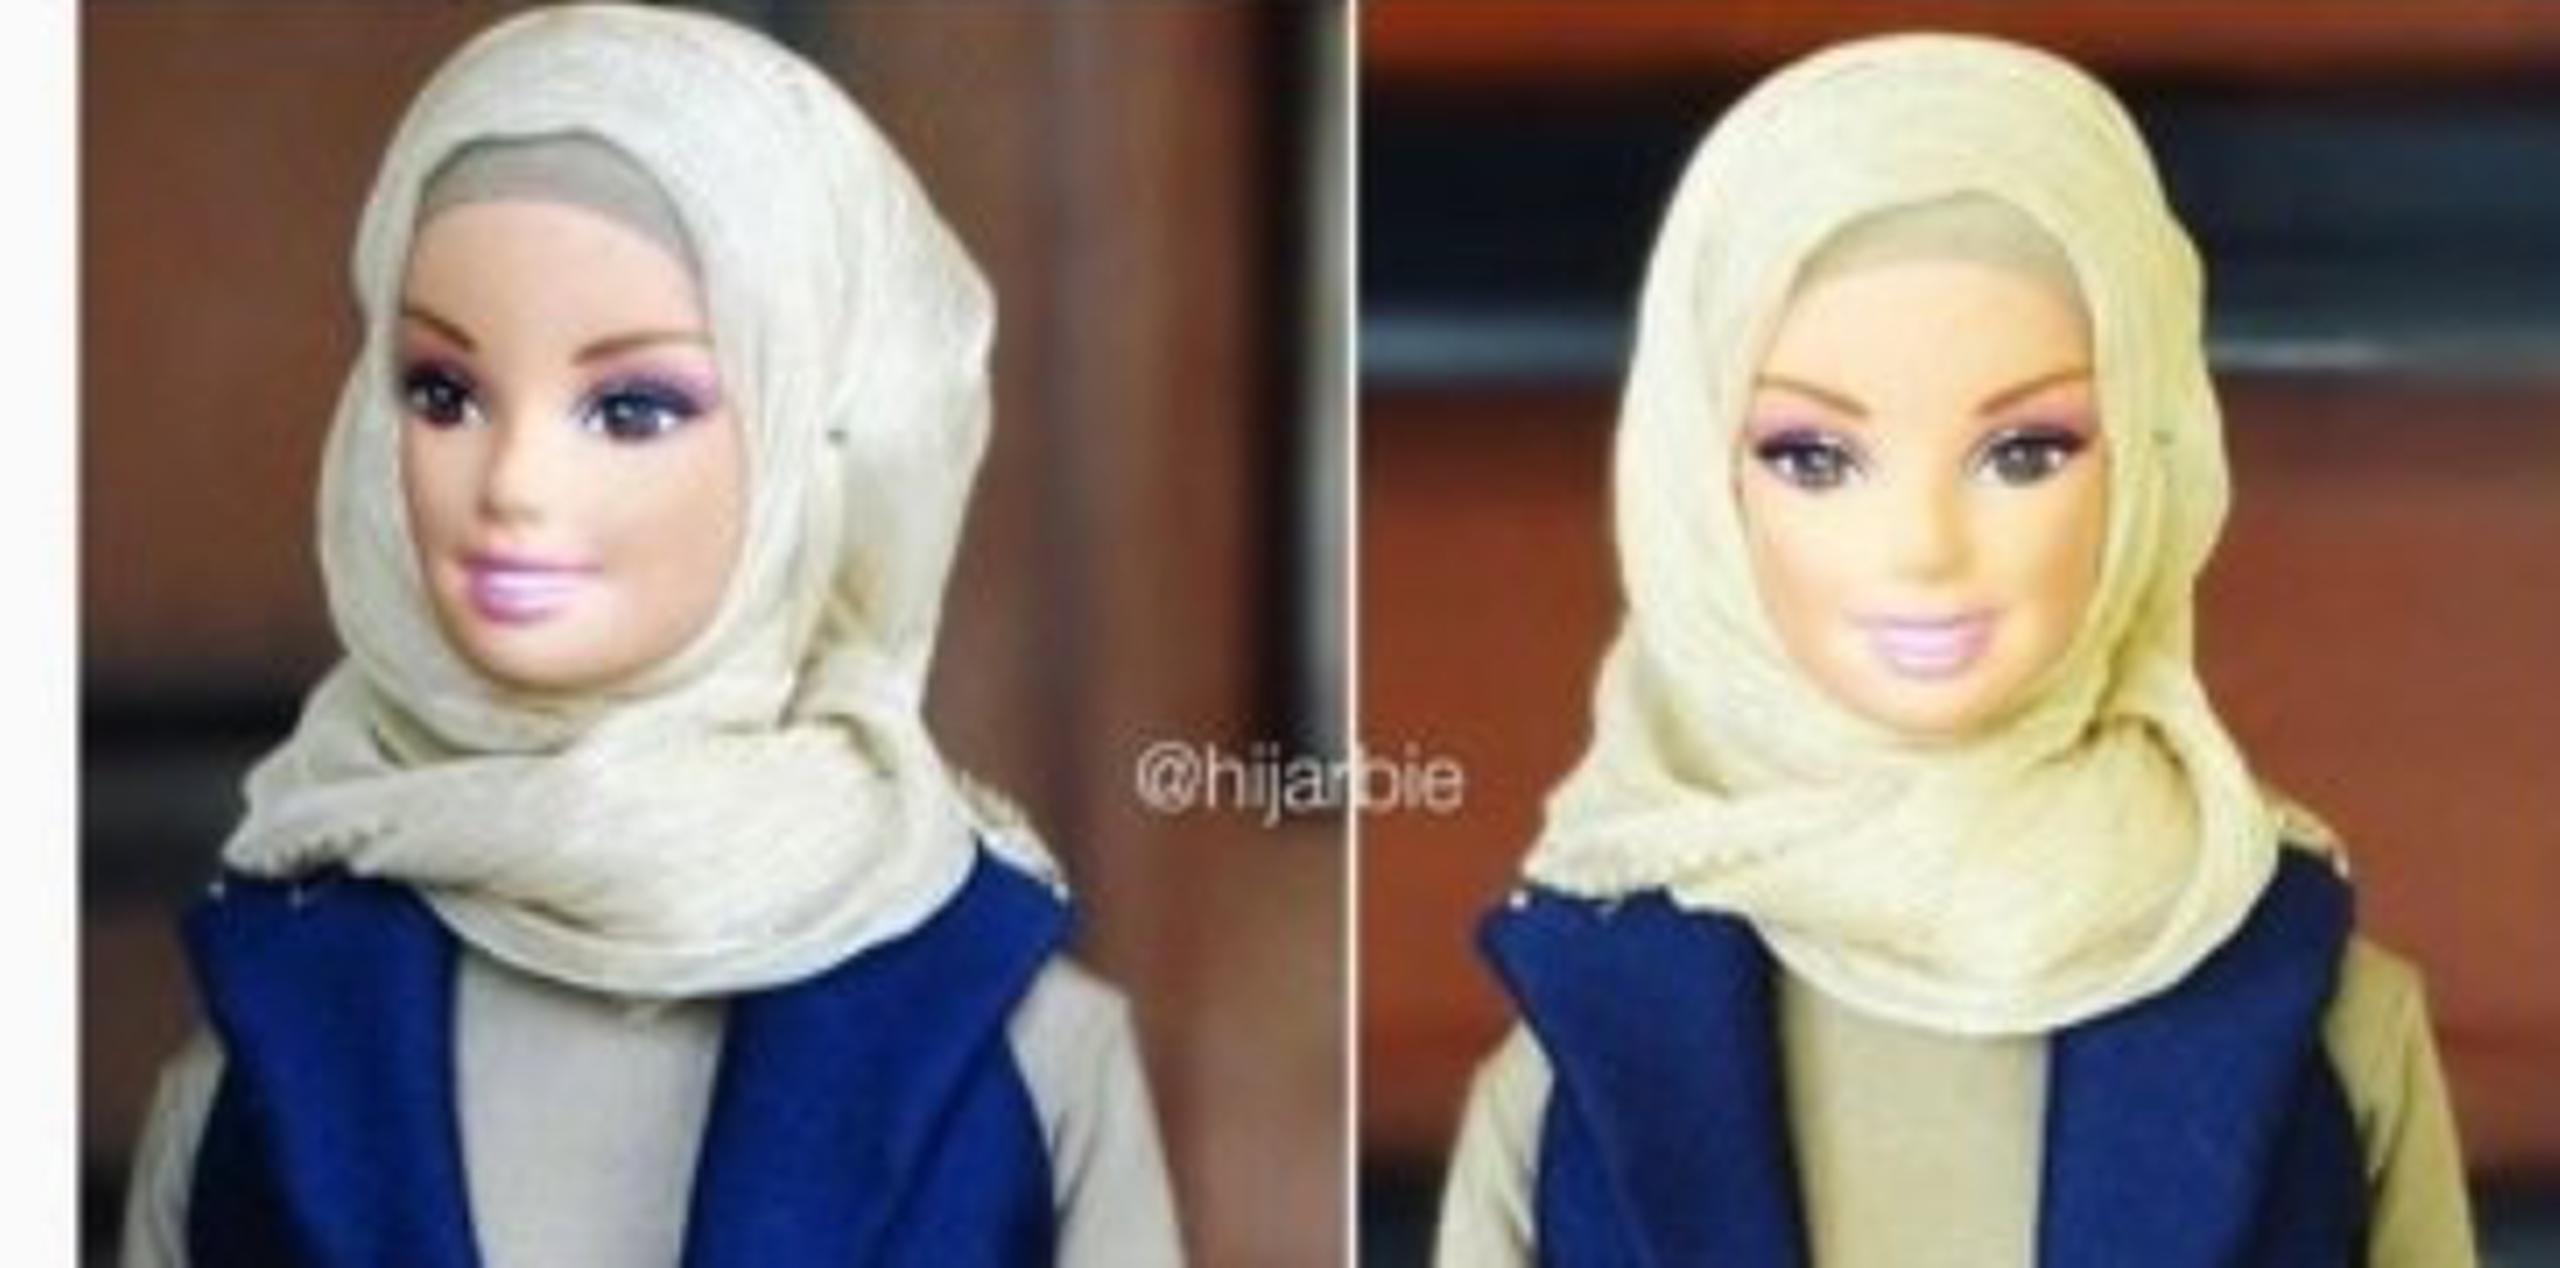 "Quiero inspirar a otras chicas, popularizar el hiyab, corregir malentendidos", explica la ceradora de Hijarbie. (EFE)
